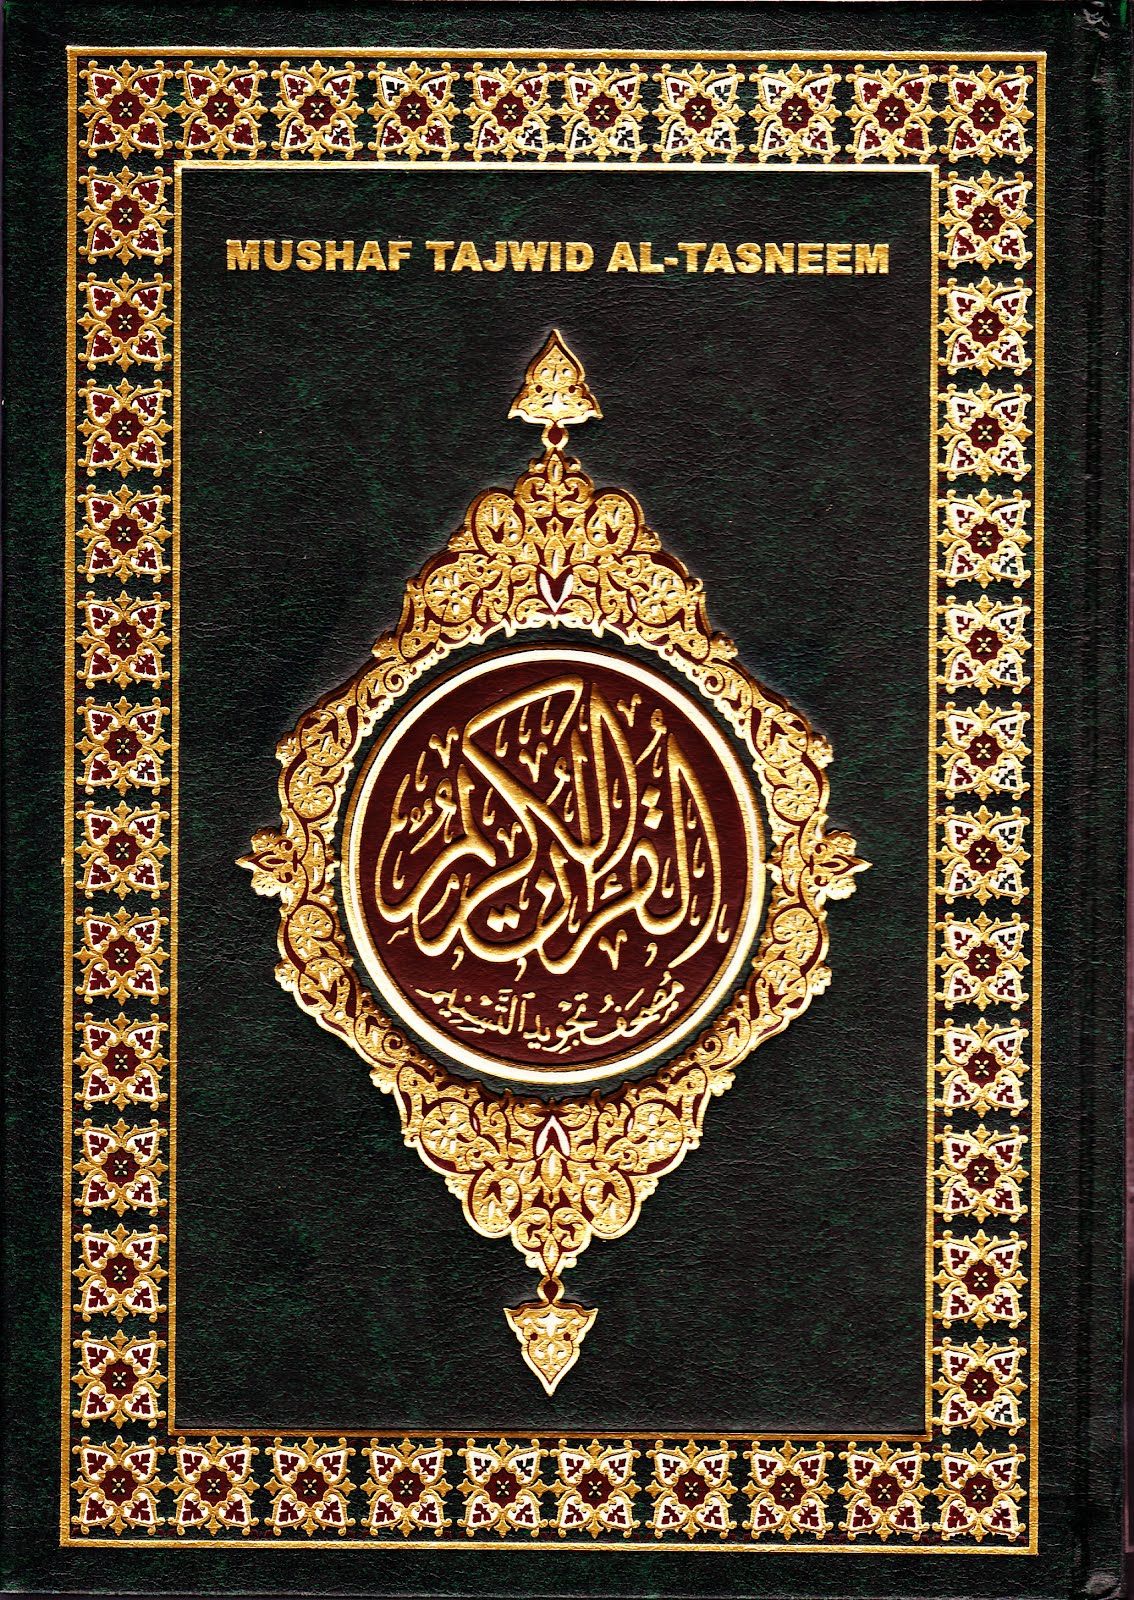  Al Quran  Al  Tasneem Eletronik MUSHAF AL QURAN  ELETRONIK 